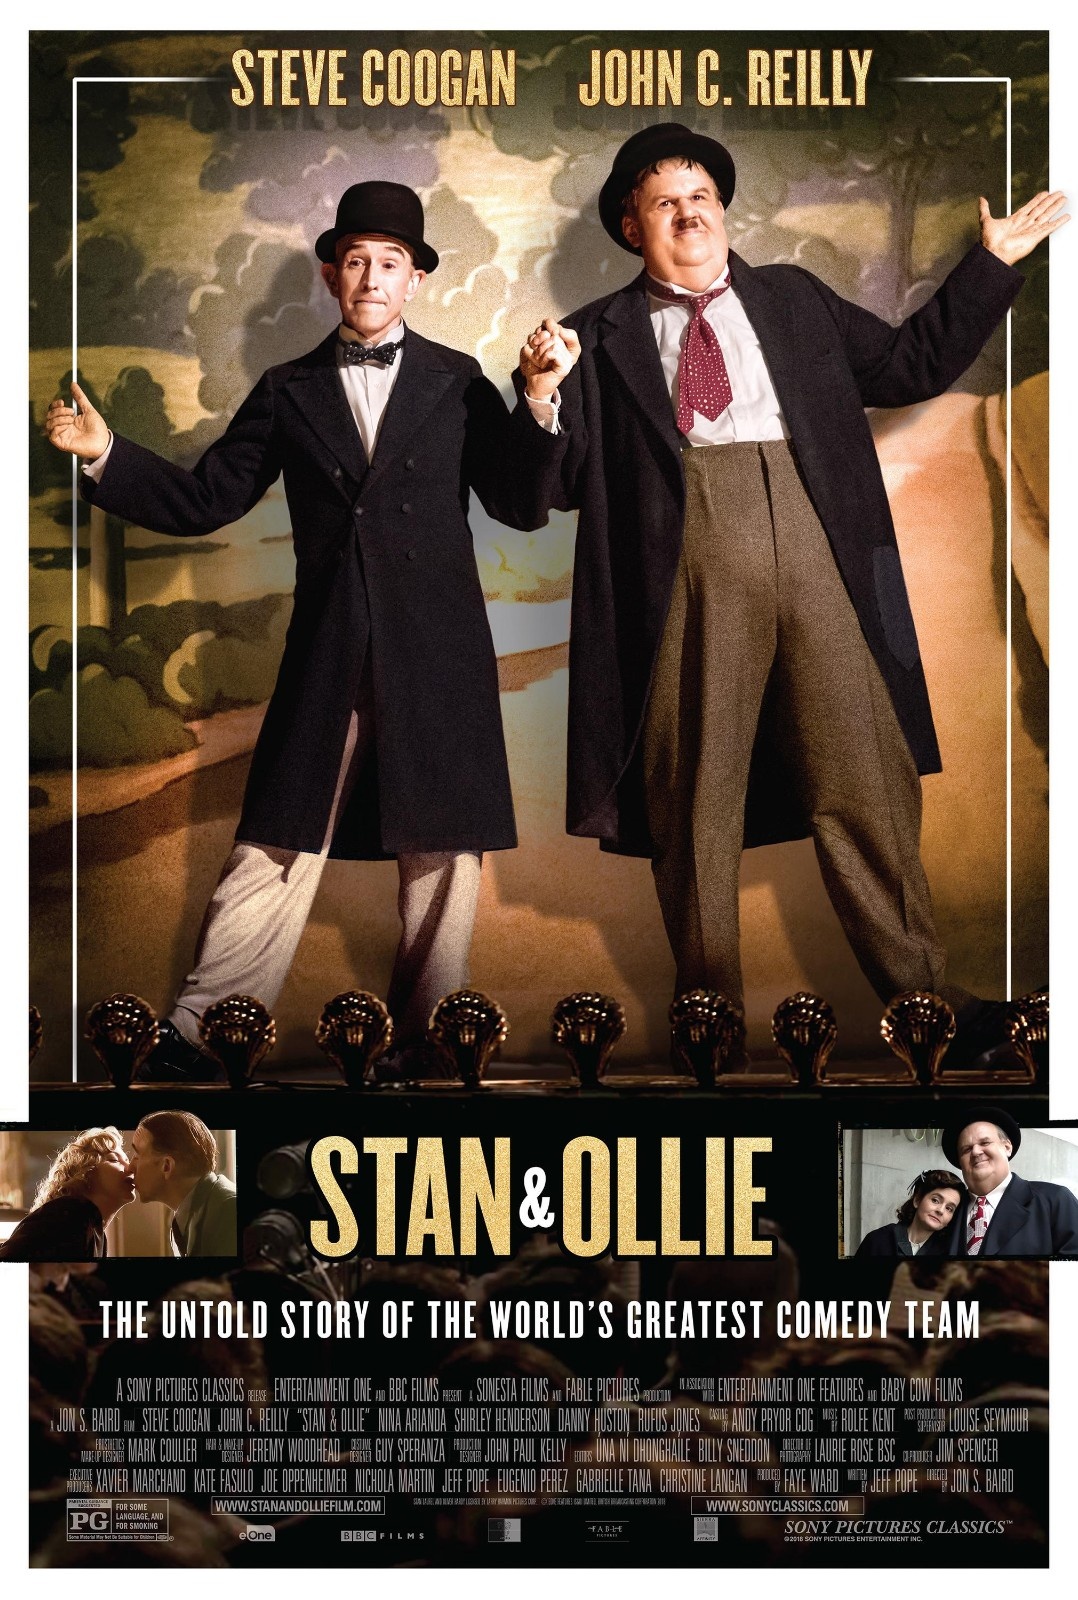 《斯坦和奥利》预告 演绎上世纪银幕最佳喜剧搭档